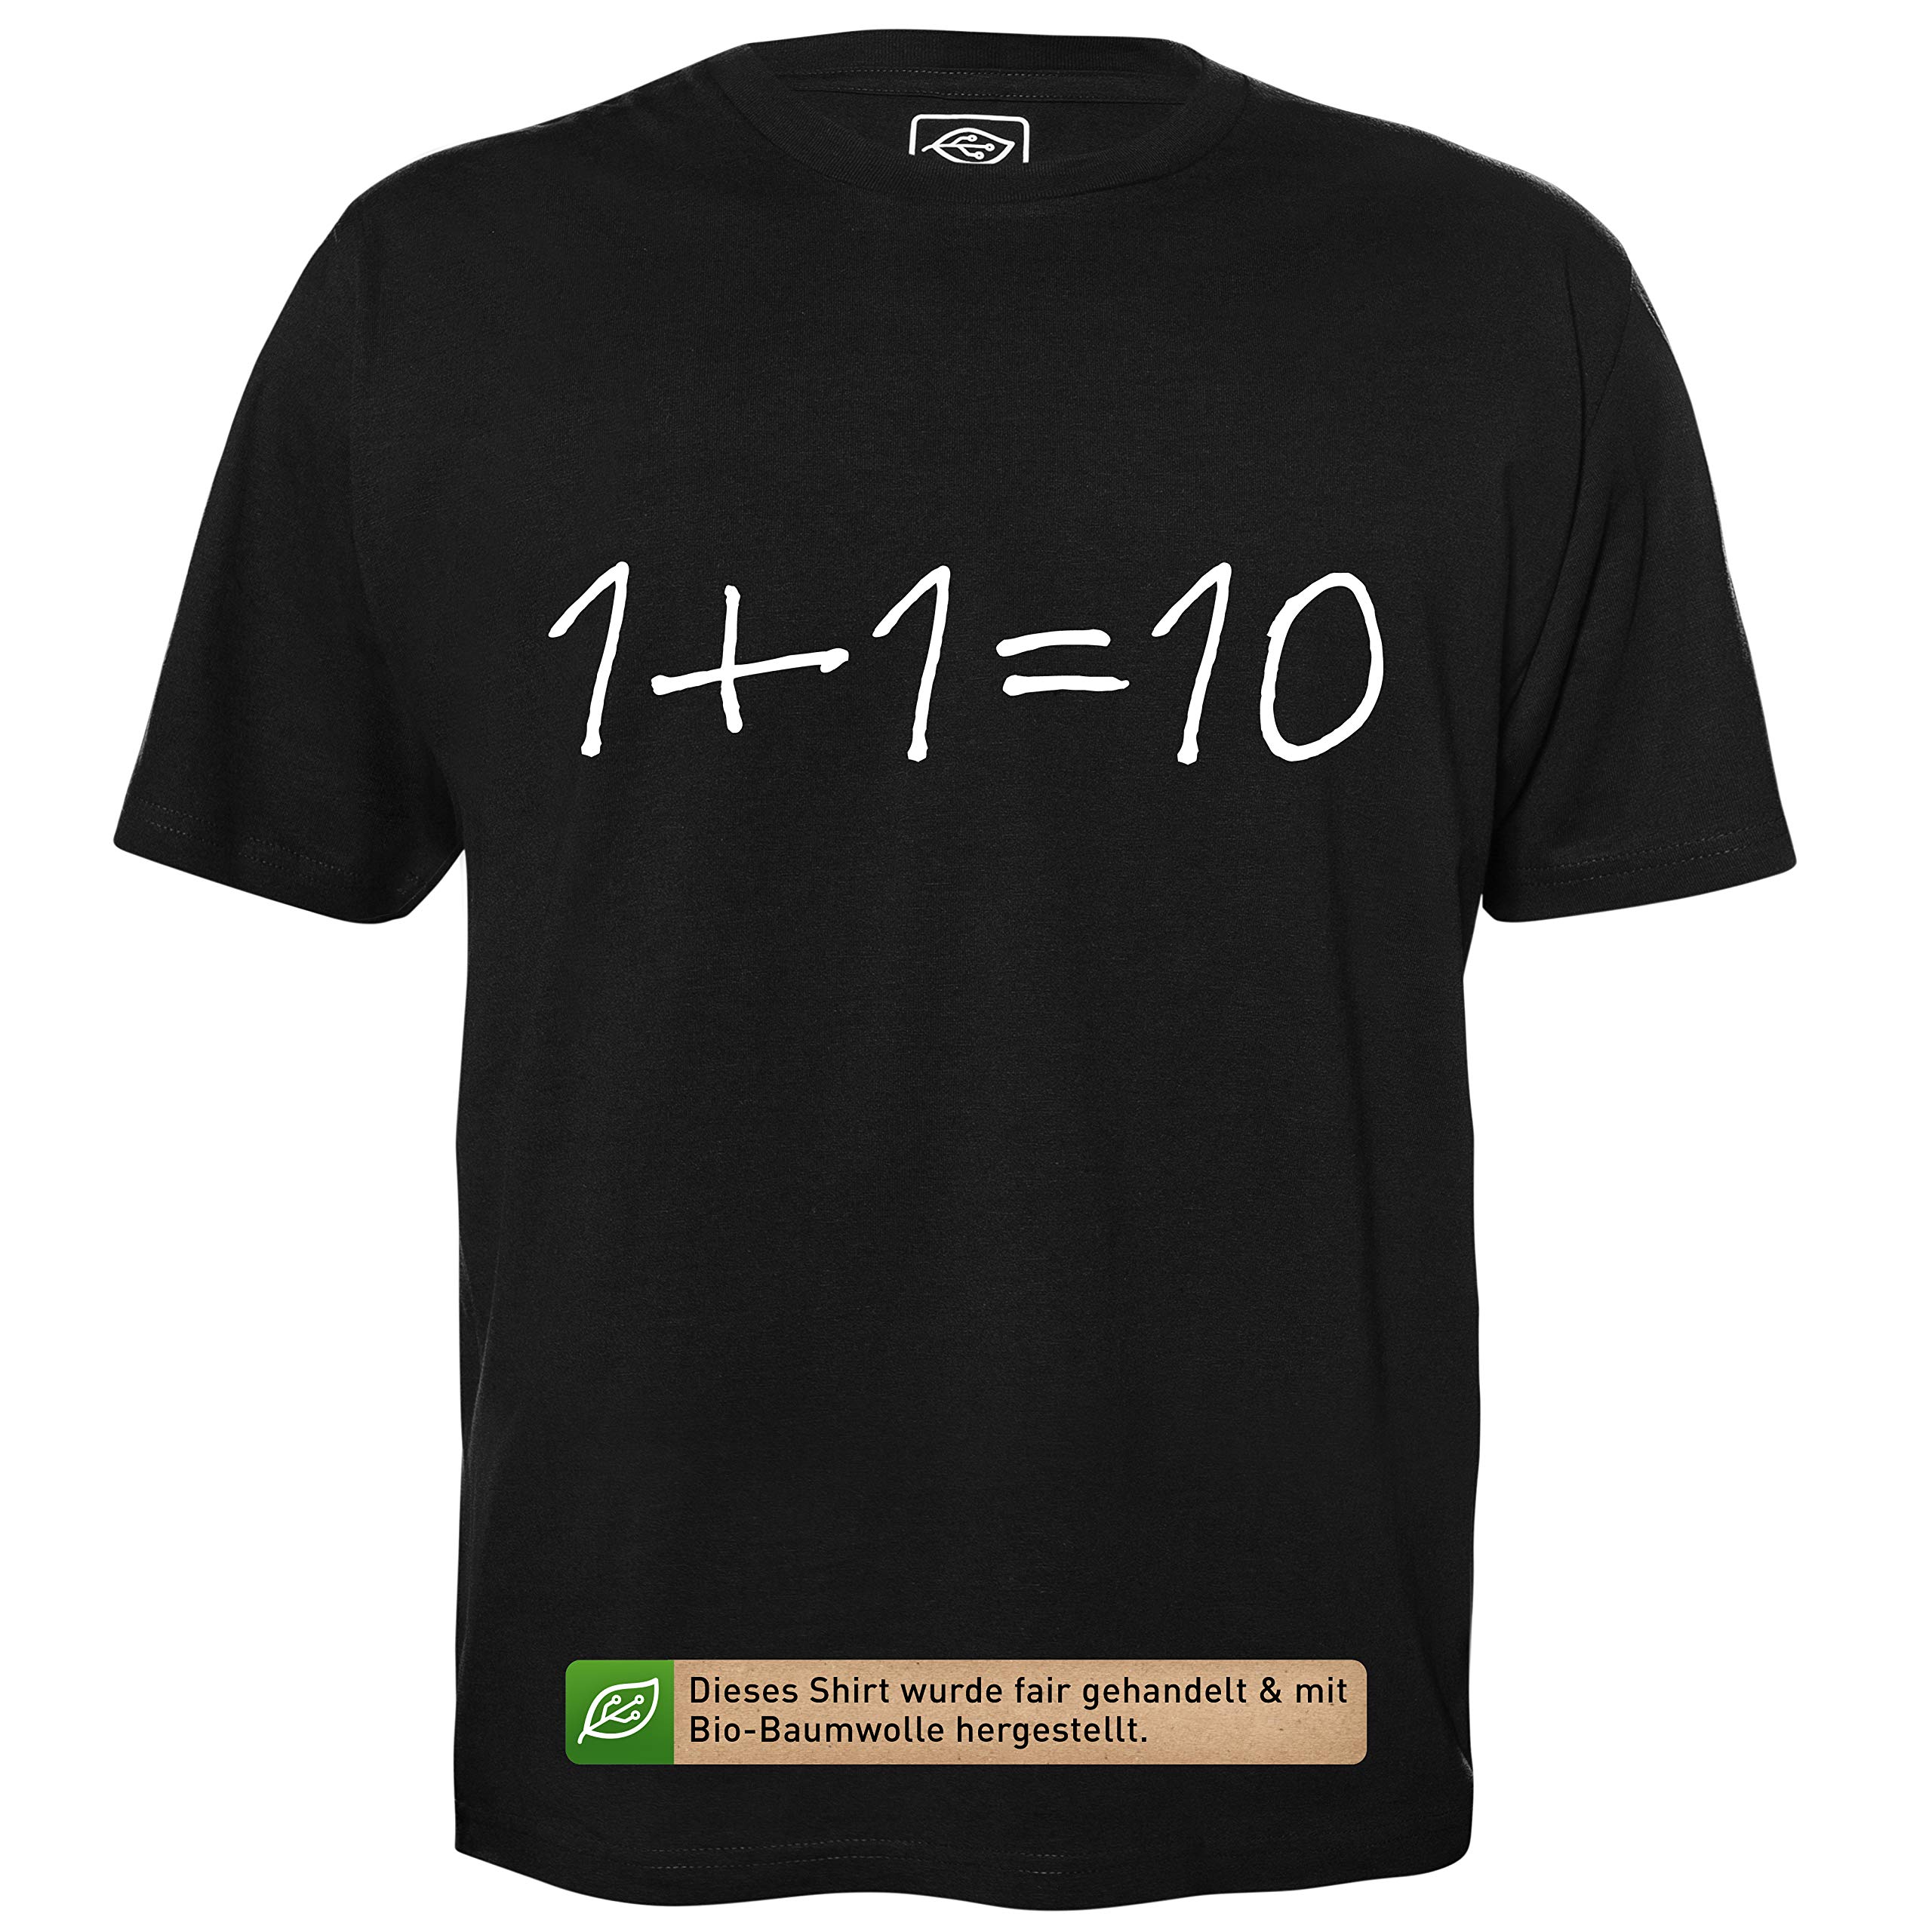 1+1=10 - Herren T-Shirt für Geeks mit Spruch Motiv aus Bio-Baumwolle Kurzarm Rundhals Ausschnitt, Größe XXL